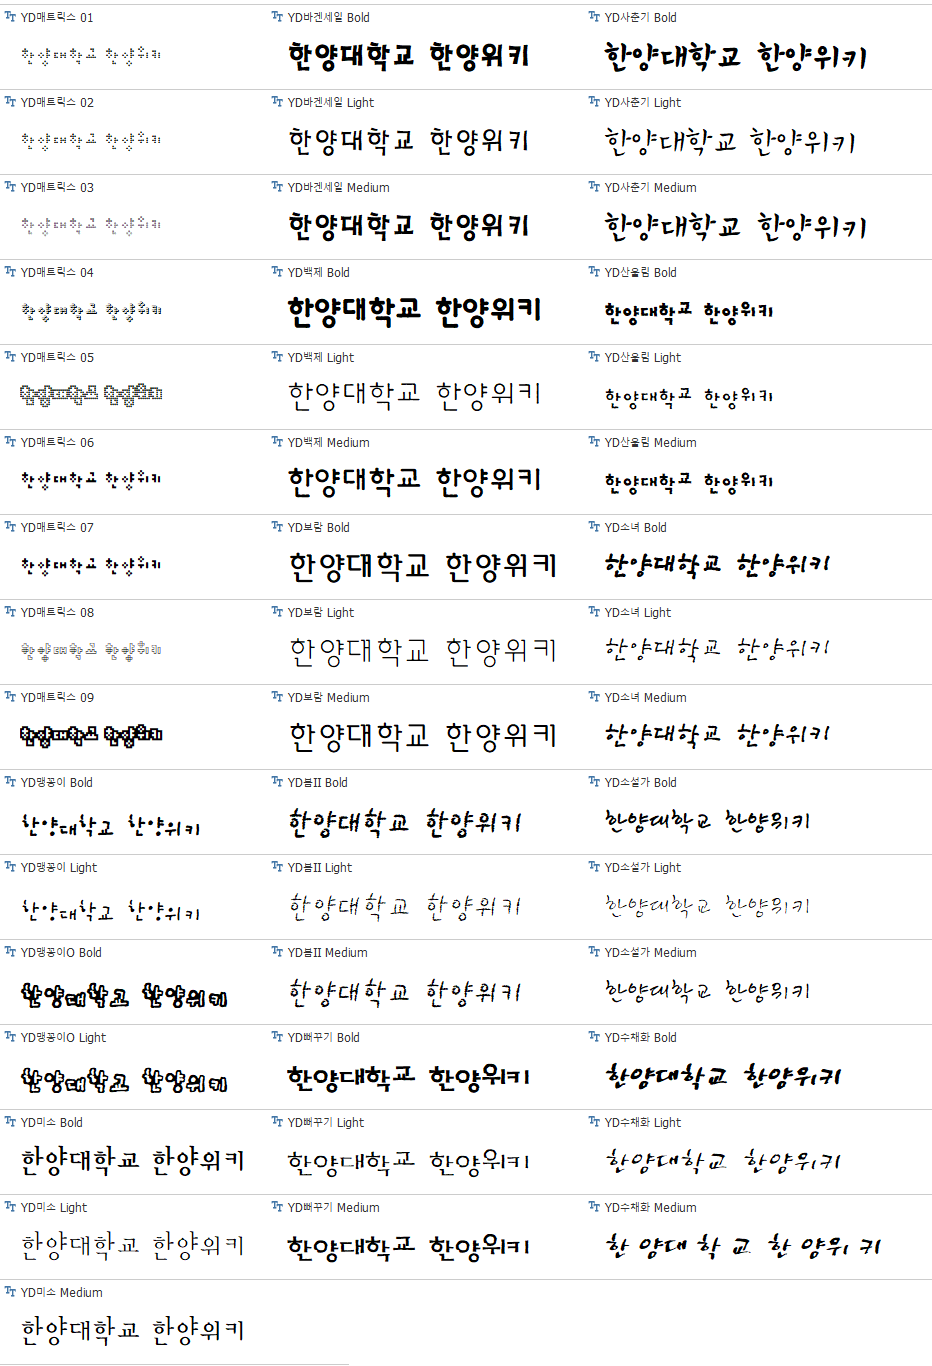 윤소호 2011 패키지 - 일반2.png